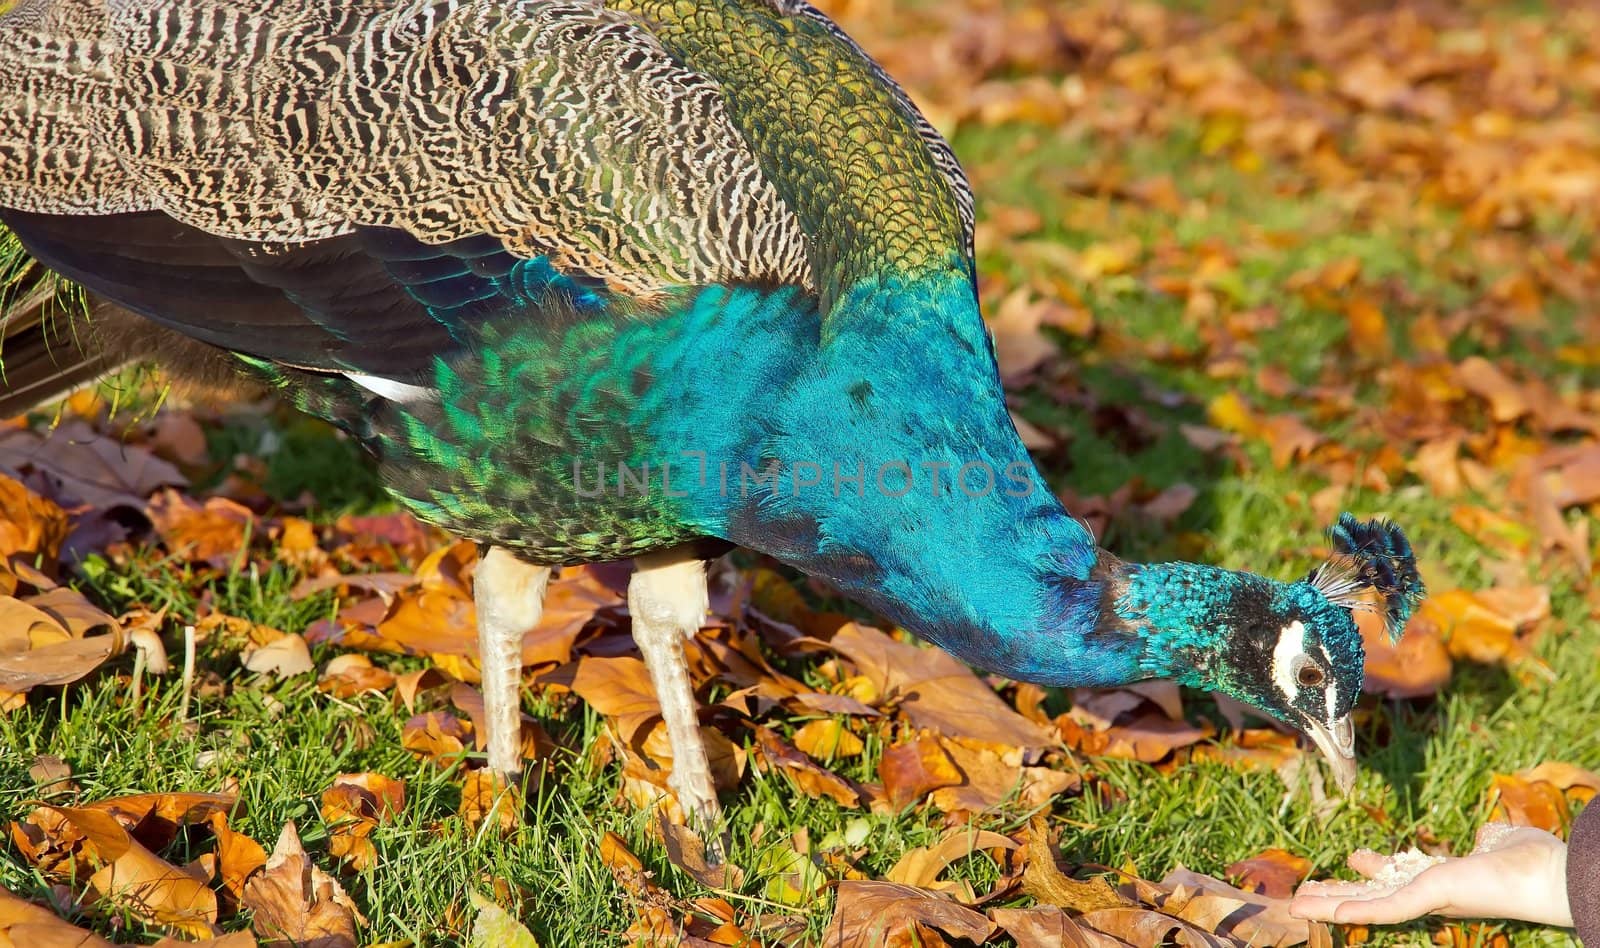 Peacock by neko92vl